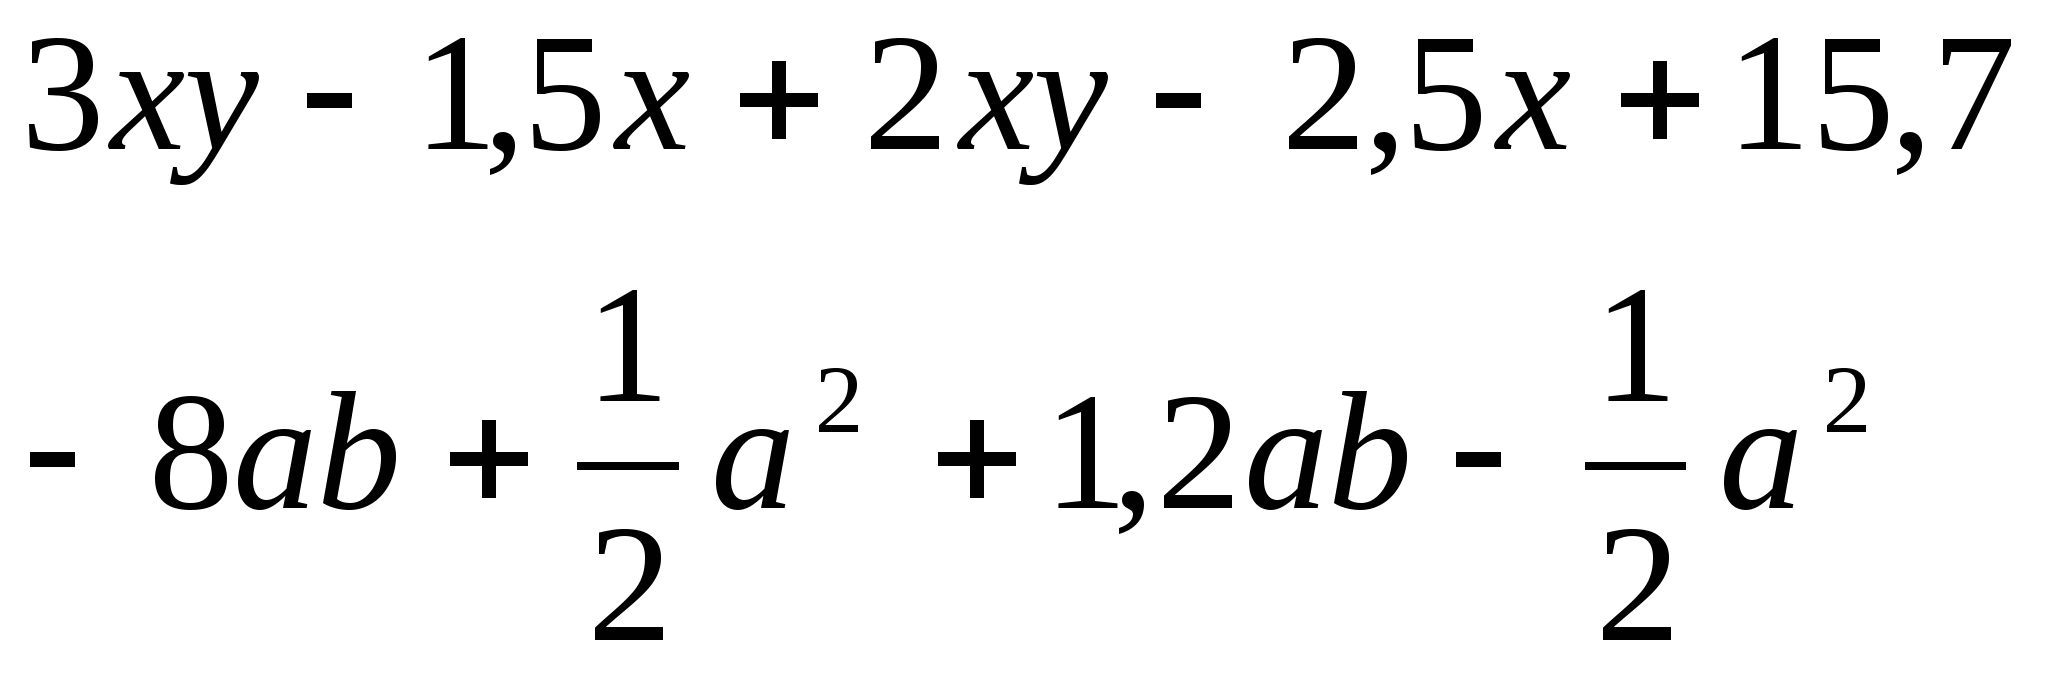 Конспект урока по алгебре по теме «Вынесение общего множителя за скобки»(7 класс)